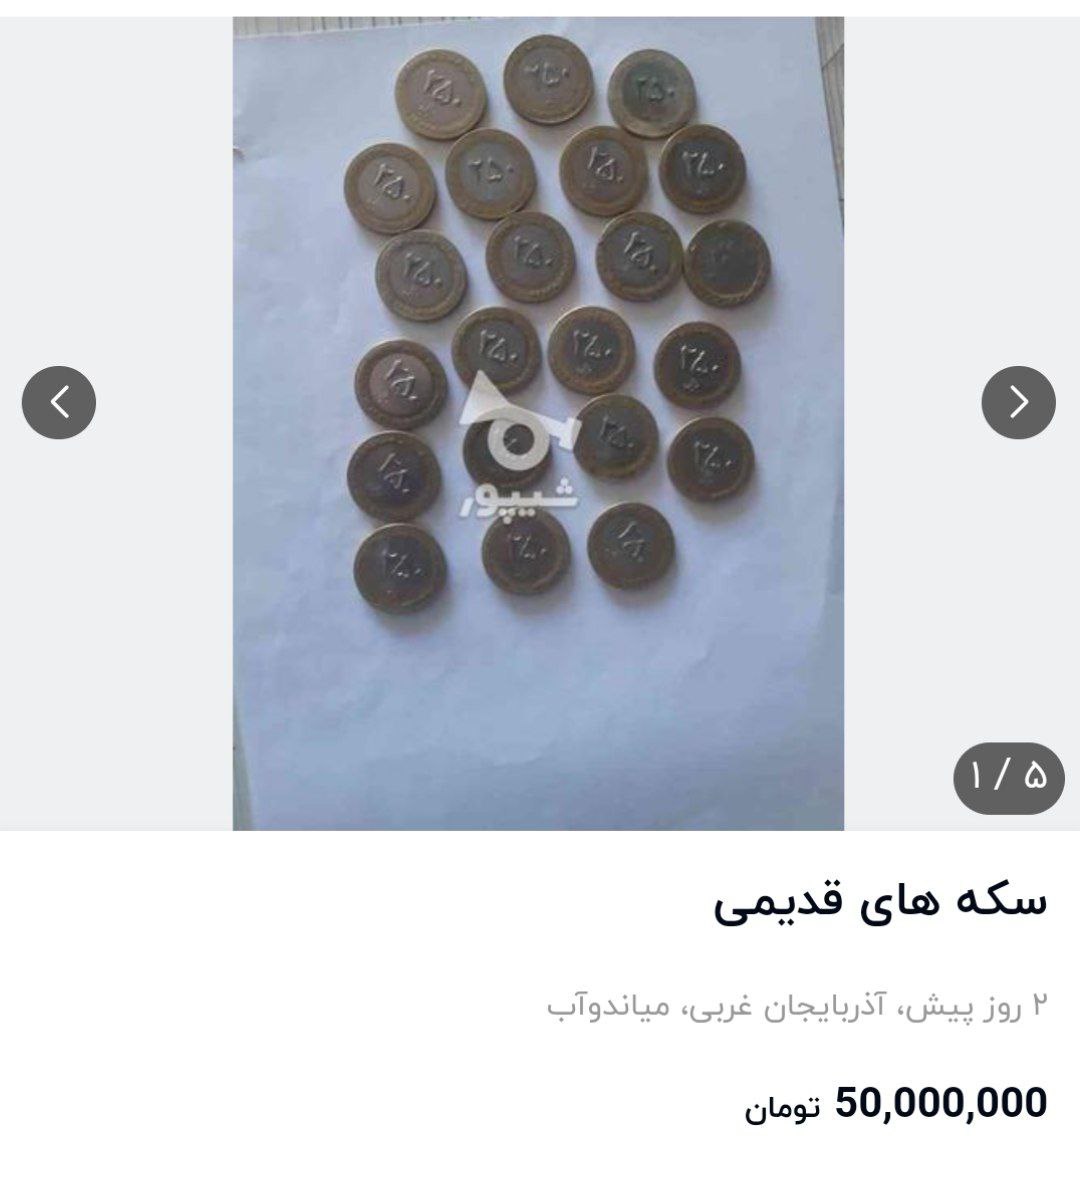 بازار عجیب خرید و فروش سکه‌های قدیمی؛ از ۶۰۰ هزار تومان تا ۵۰ میلیون تومان!+ عکس